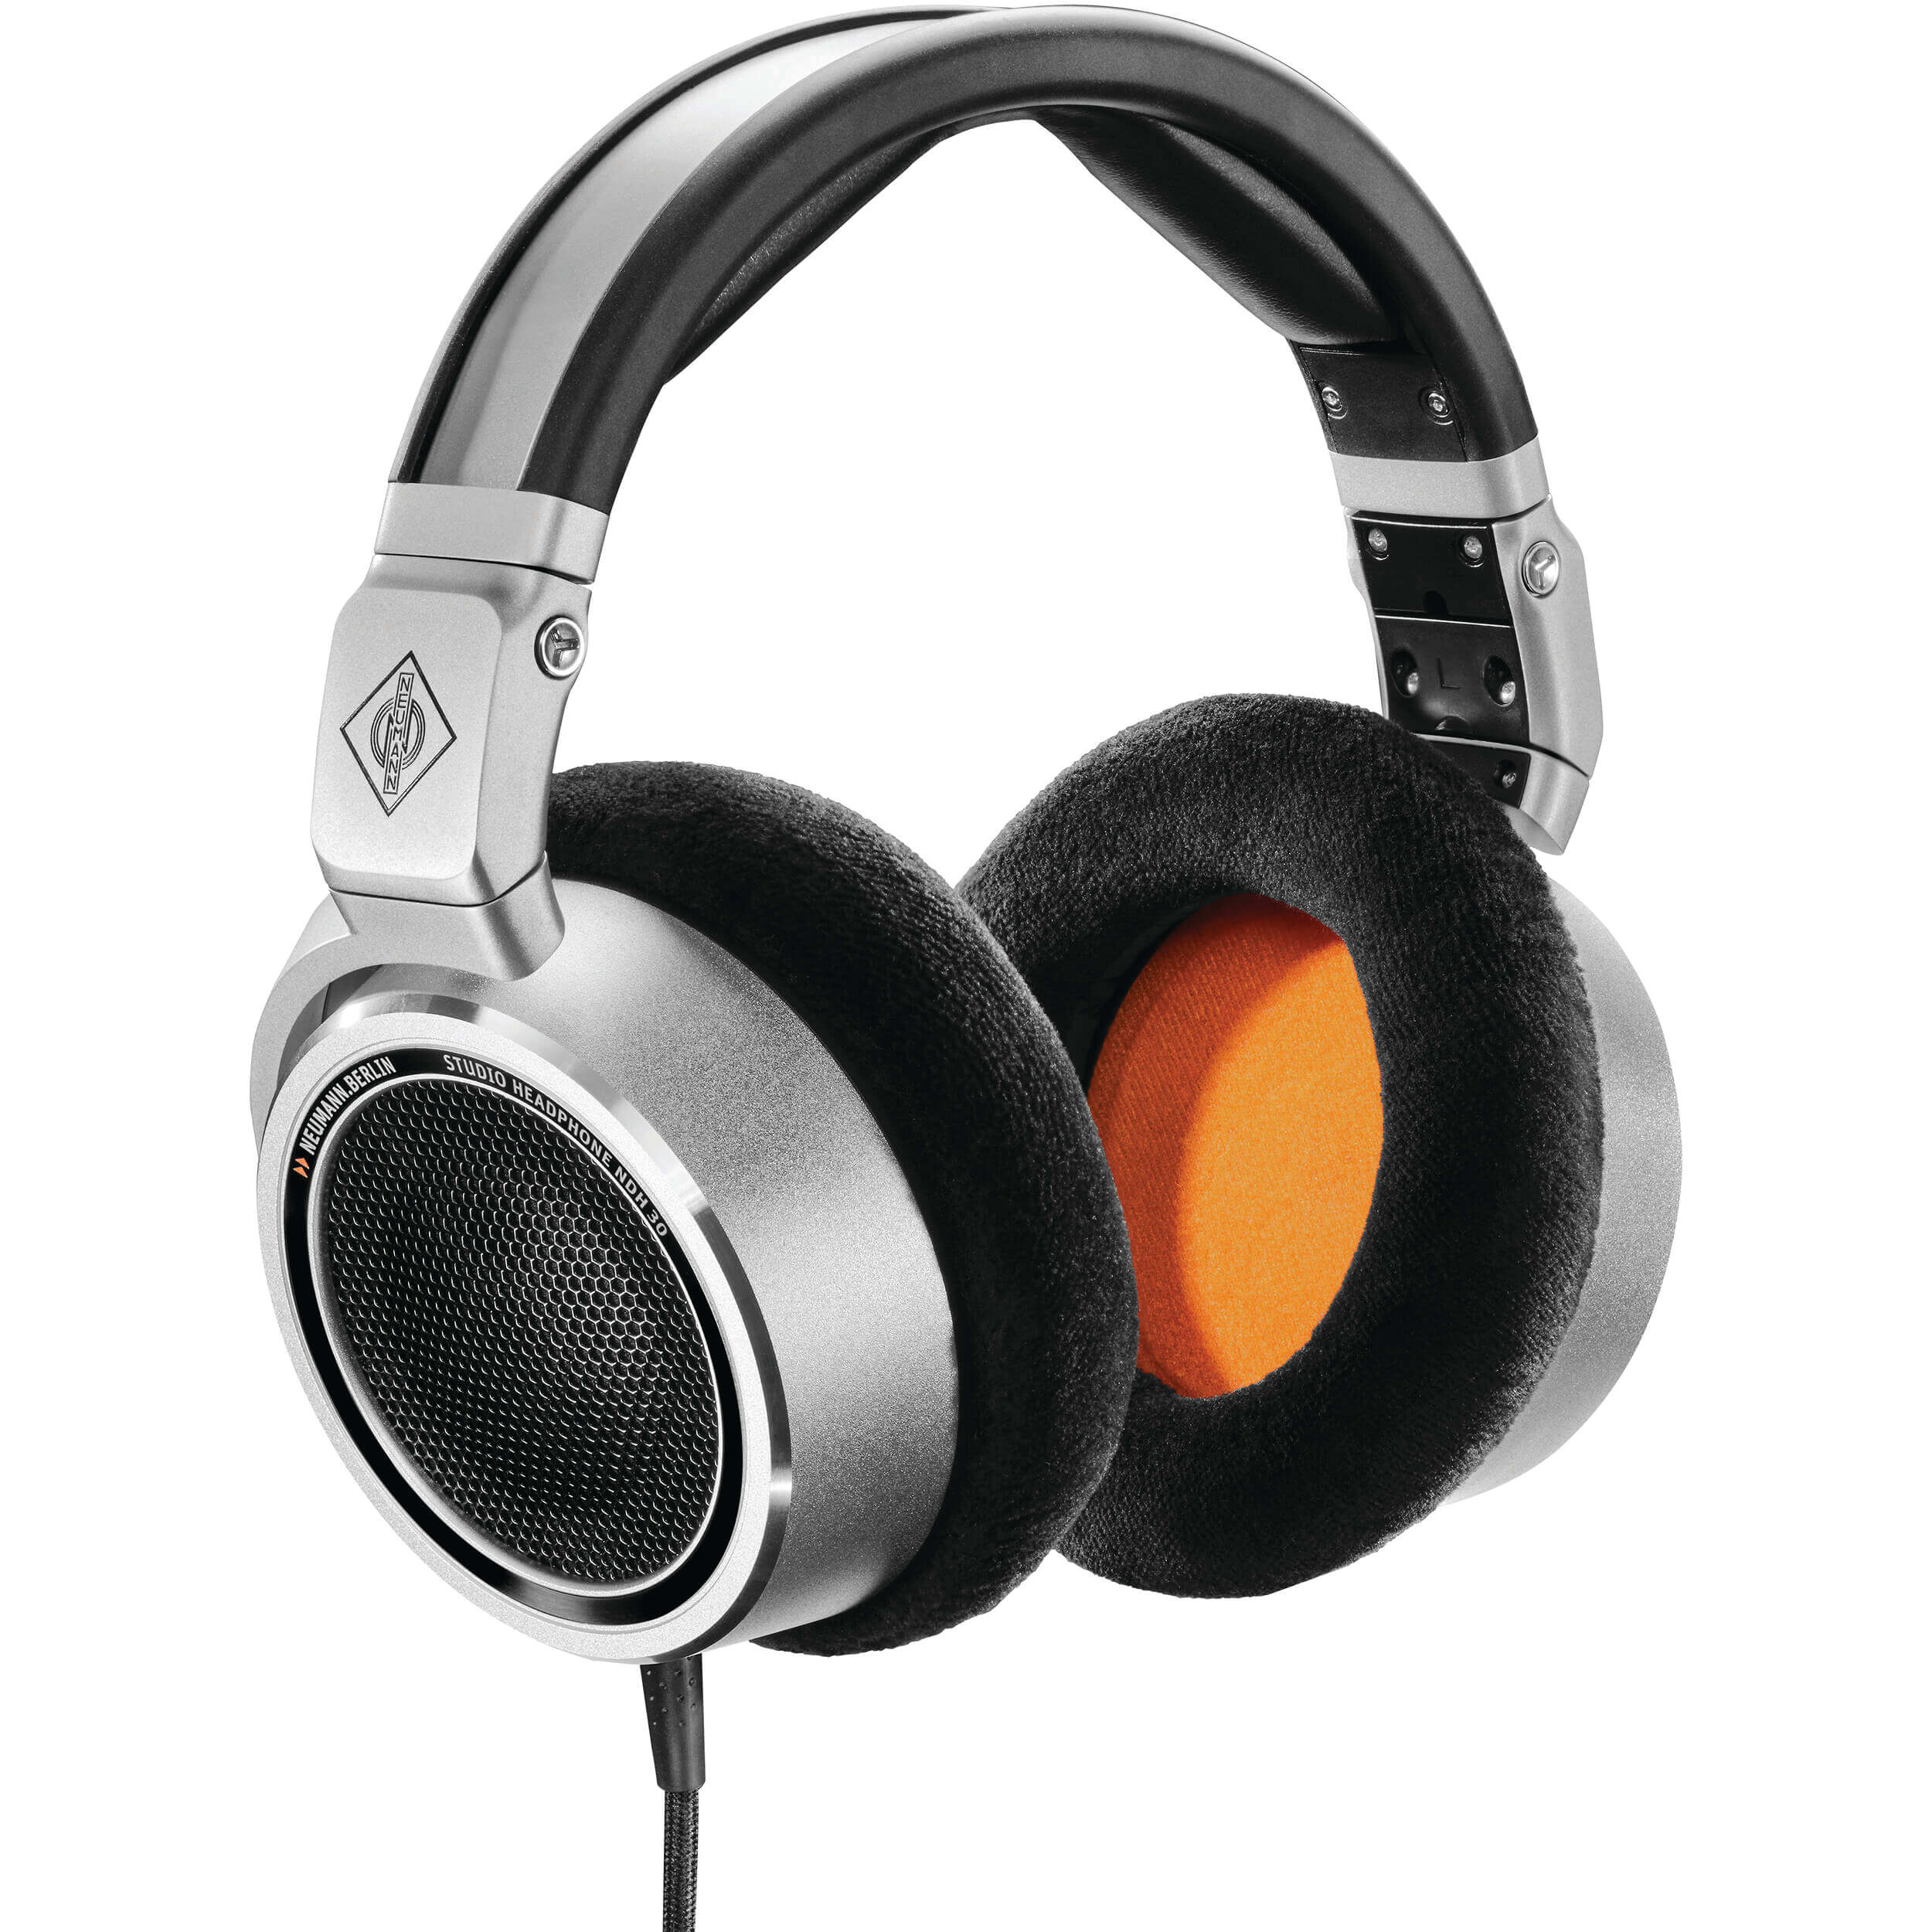 REVIEW: Neumann NDH 30 Open-Back Studio Headphones